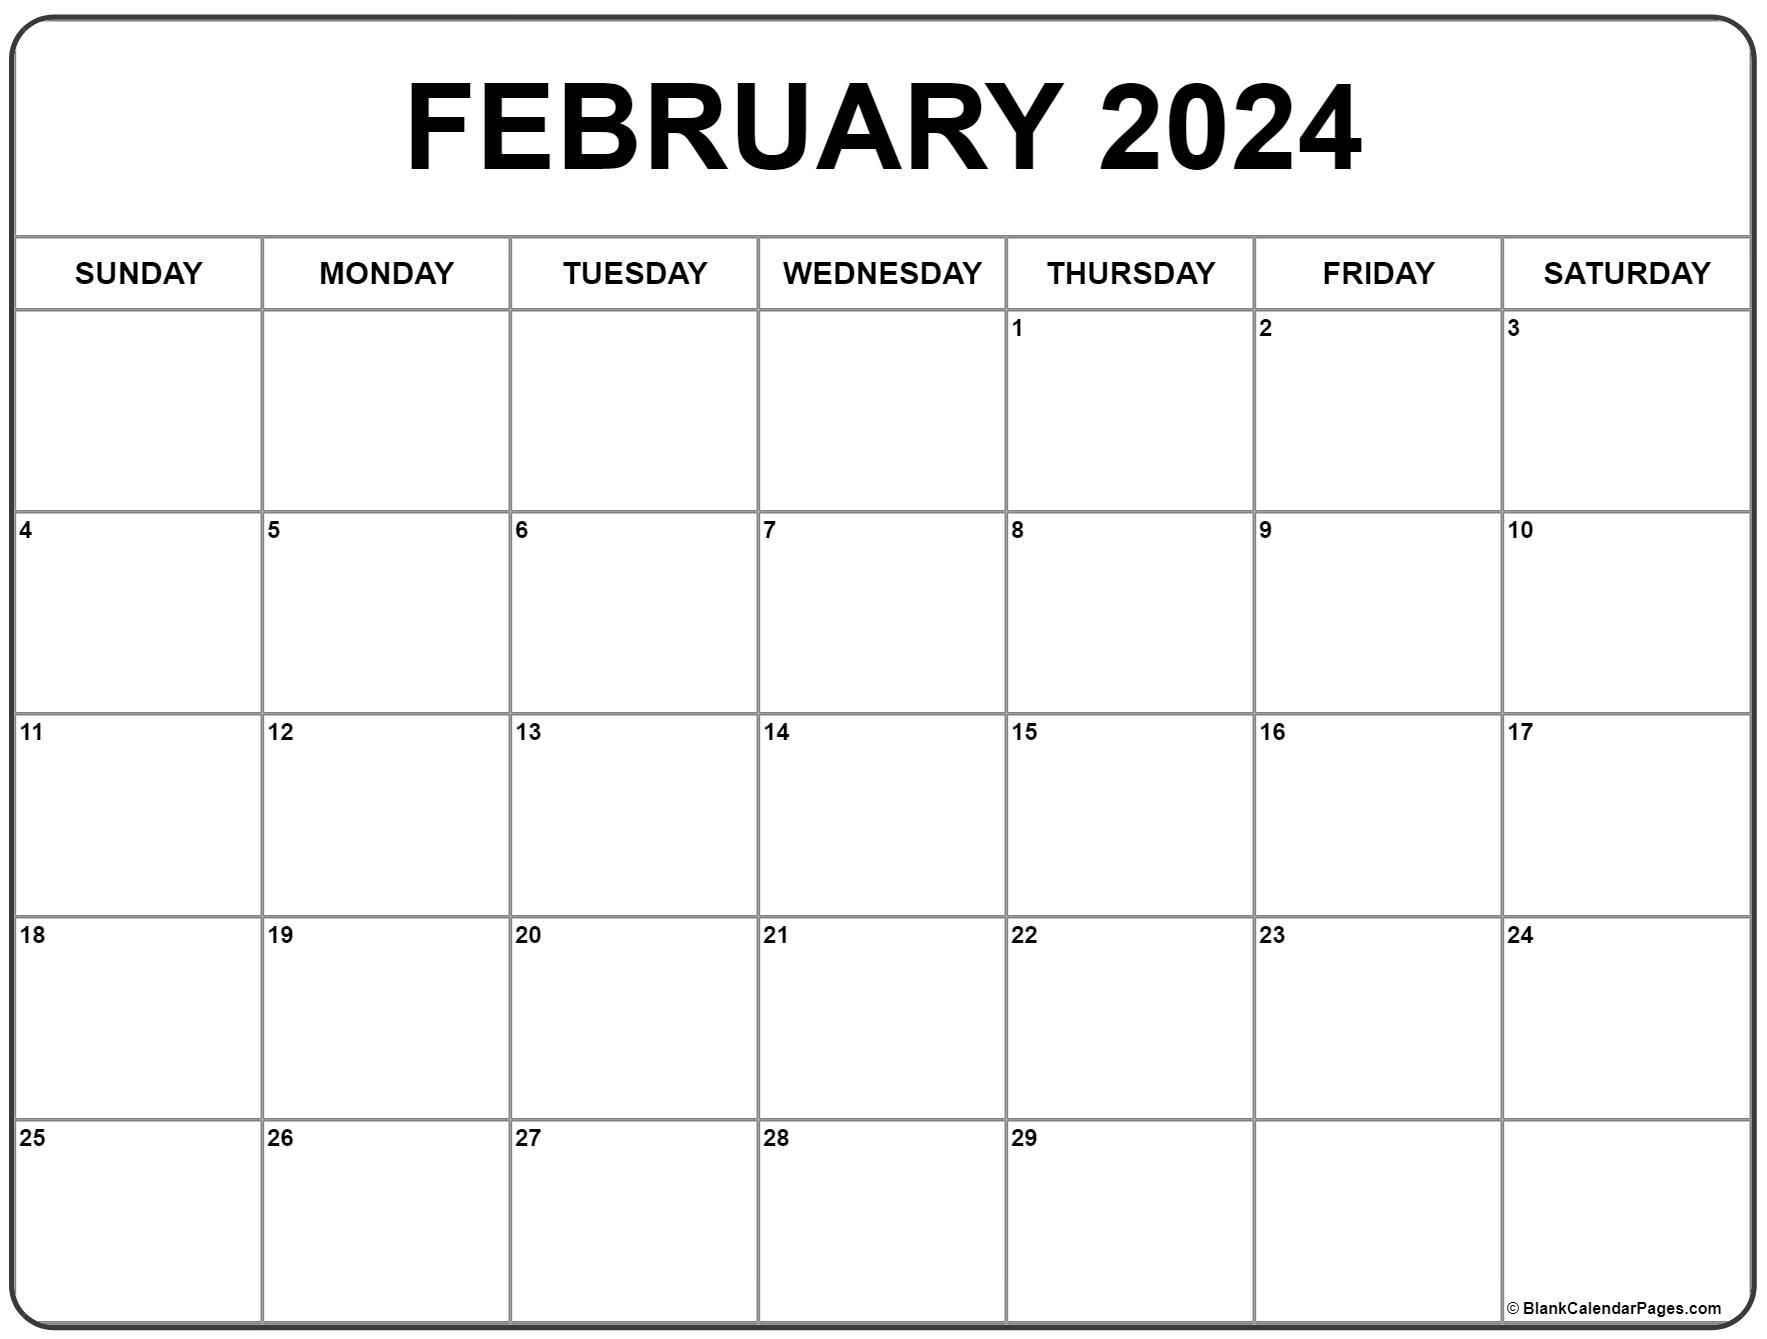 February 2024 Calendar | Free Printable Calendar | Free Printable Calendar 2024 February